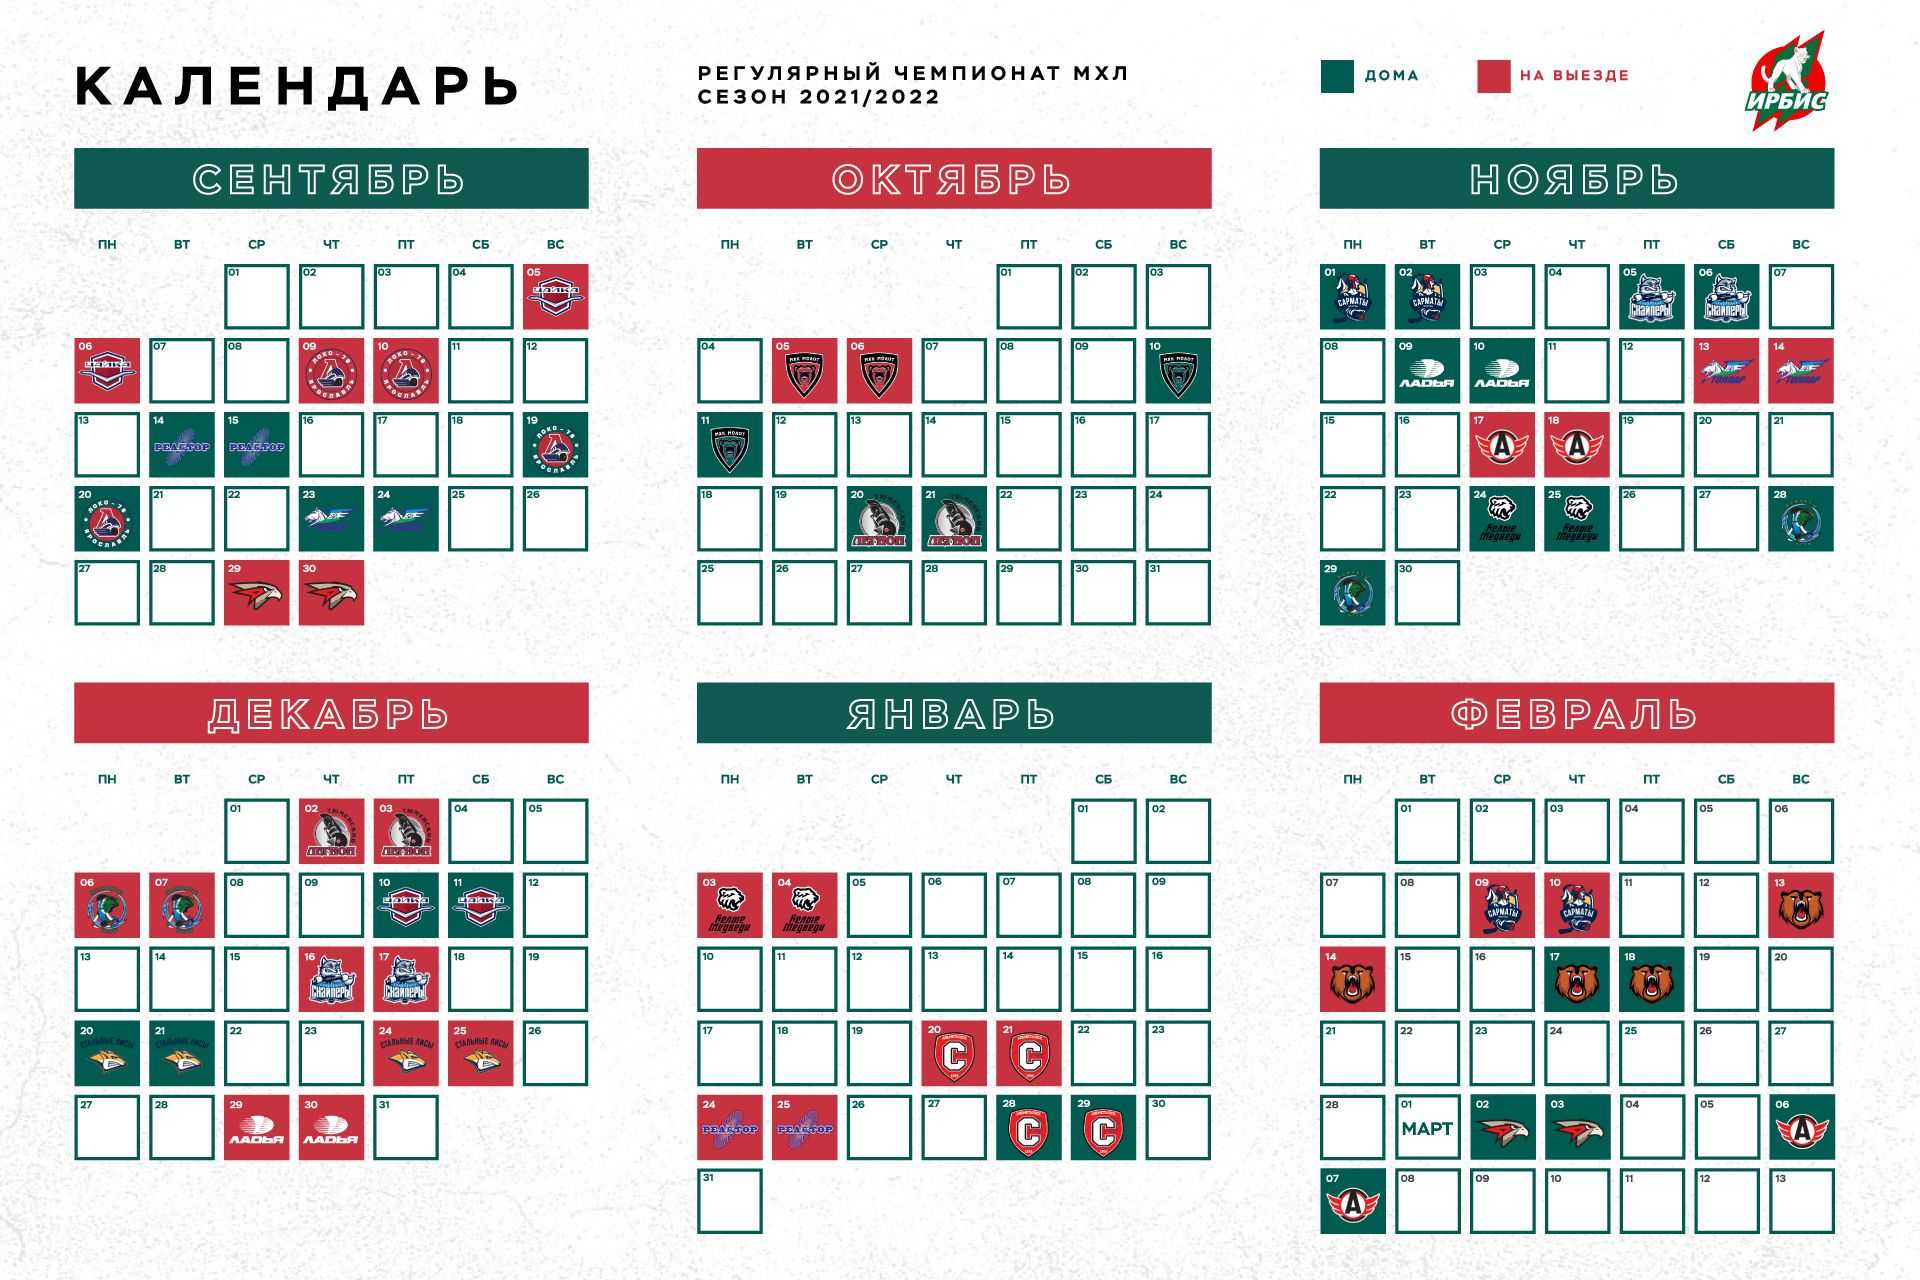 Календарь релизов: график выхода игр - ноябрь 2020 года | hdclub